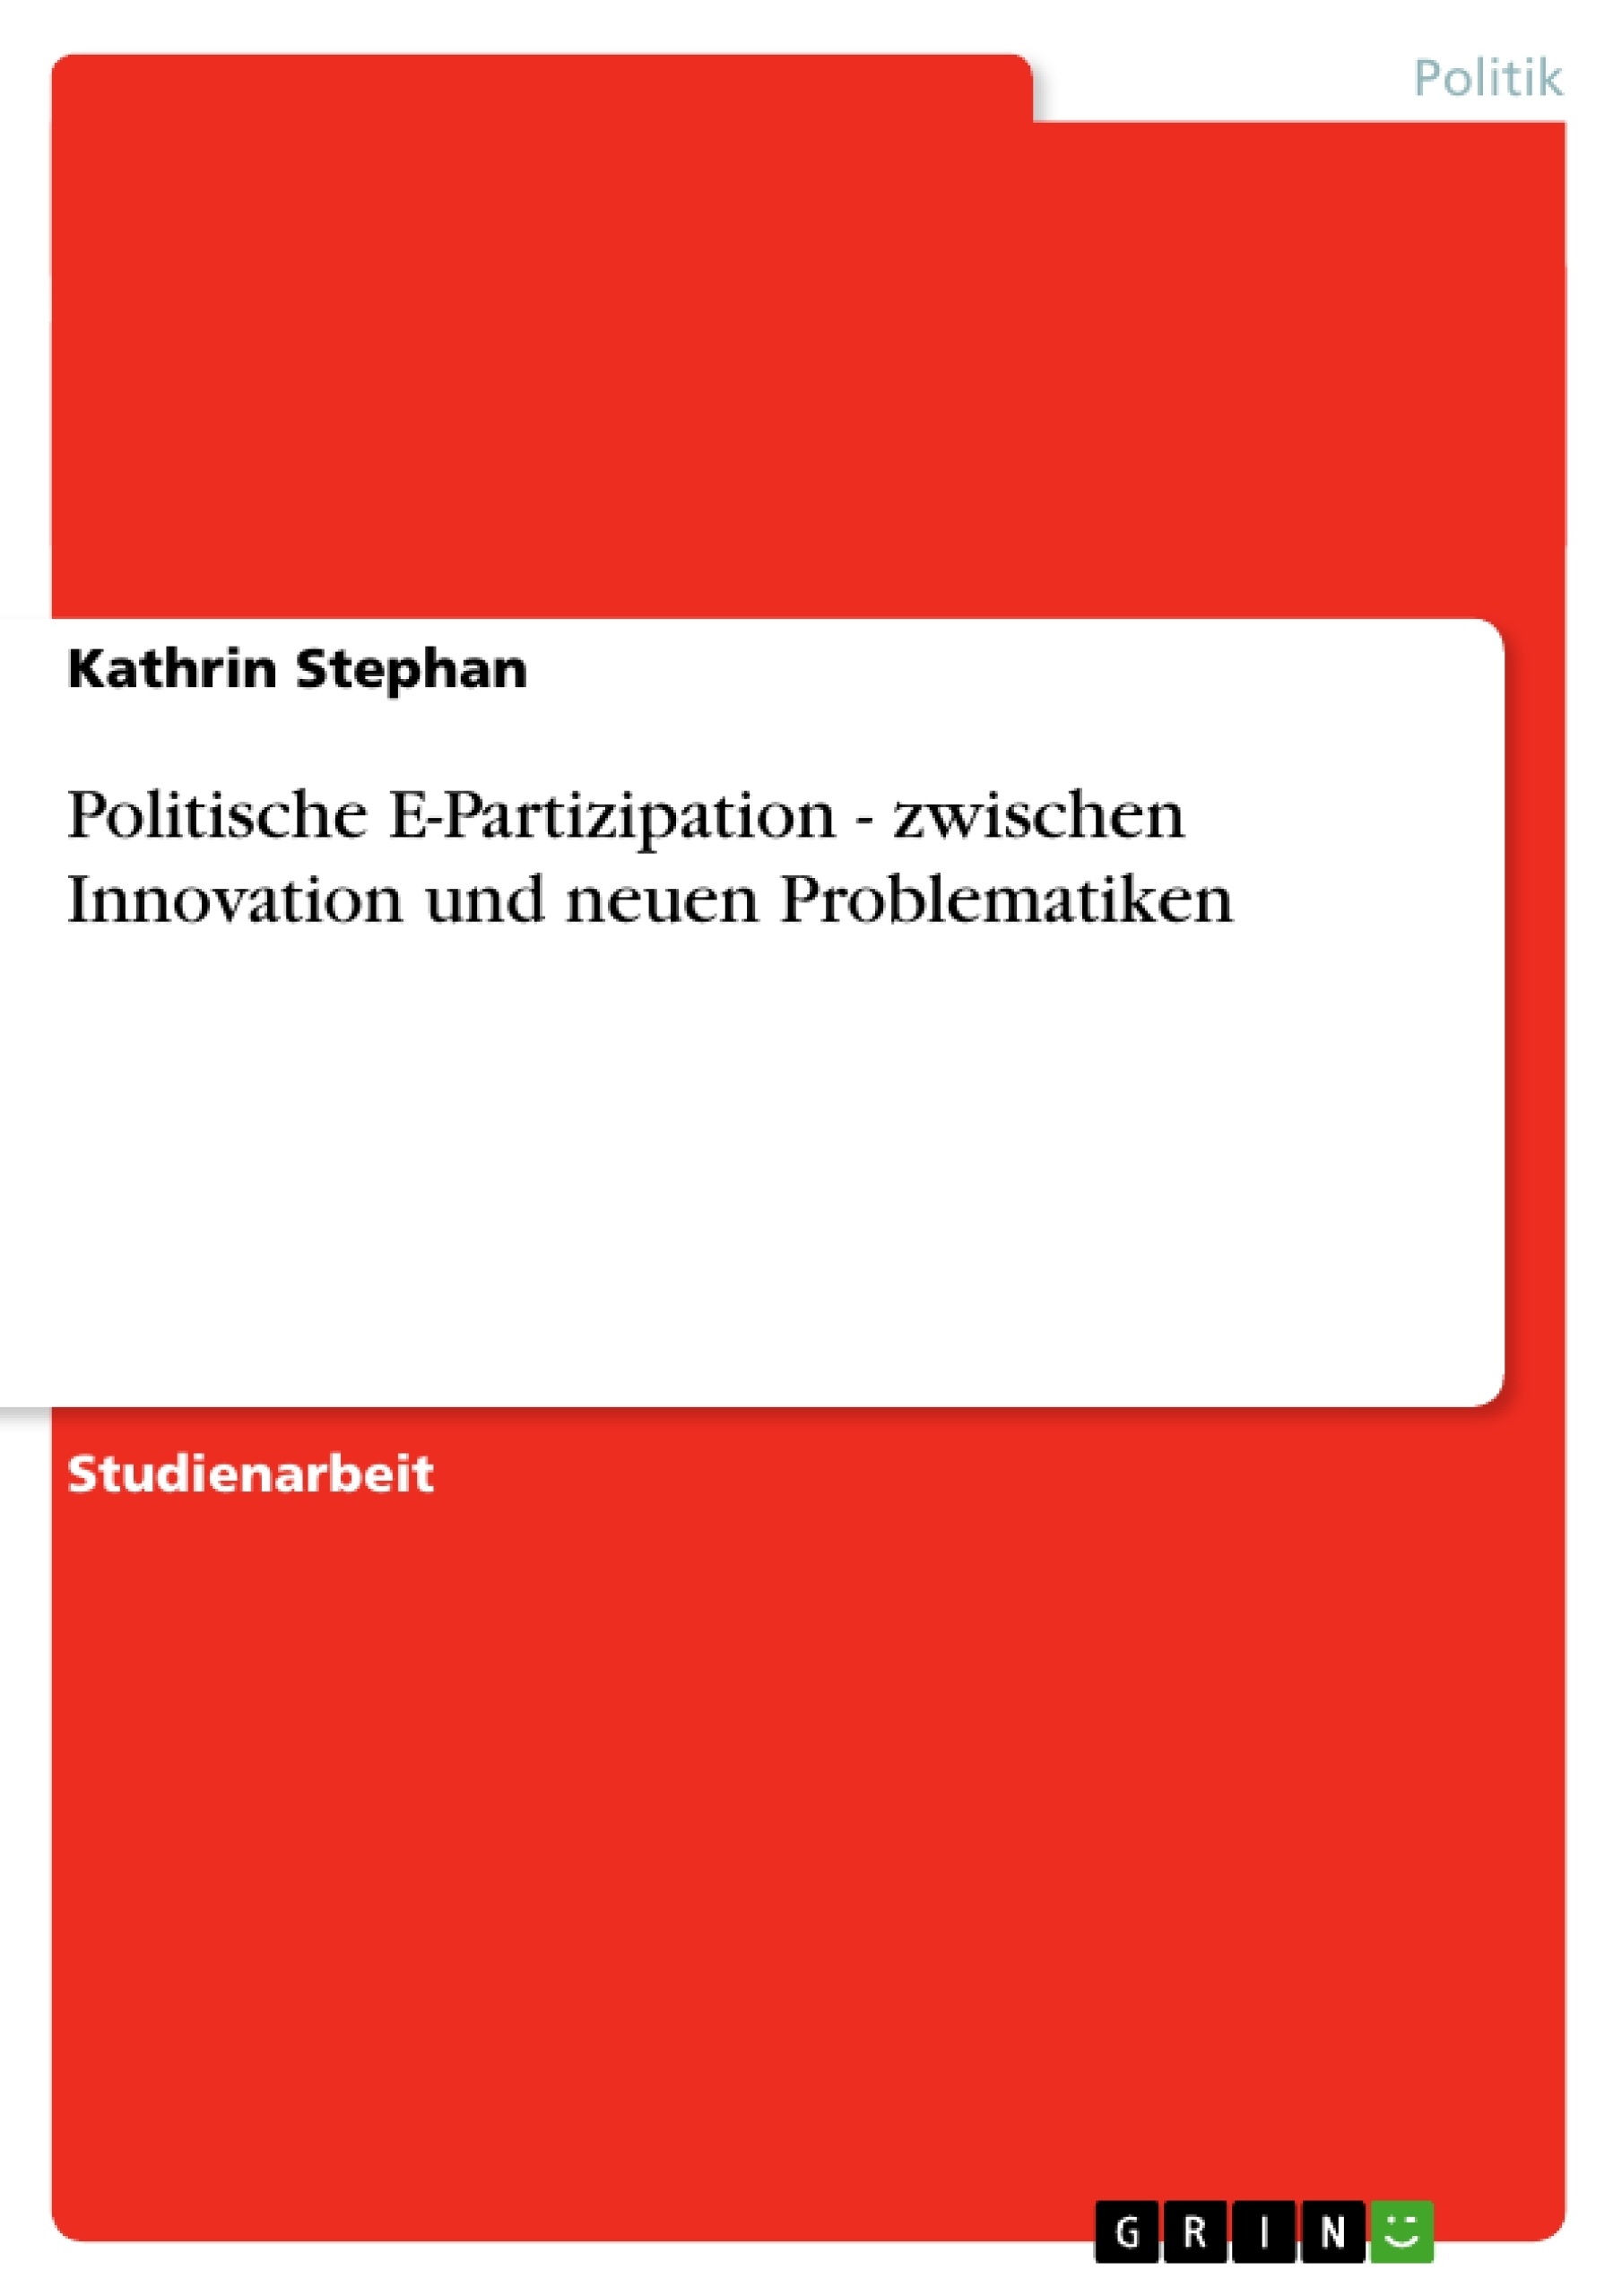 Título: Politische E-Partizipation - zwischen Innovation und neuen Problematiken